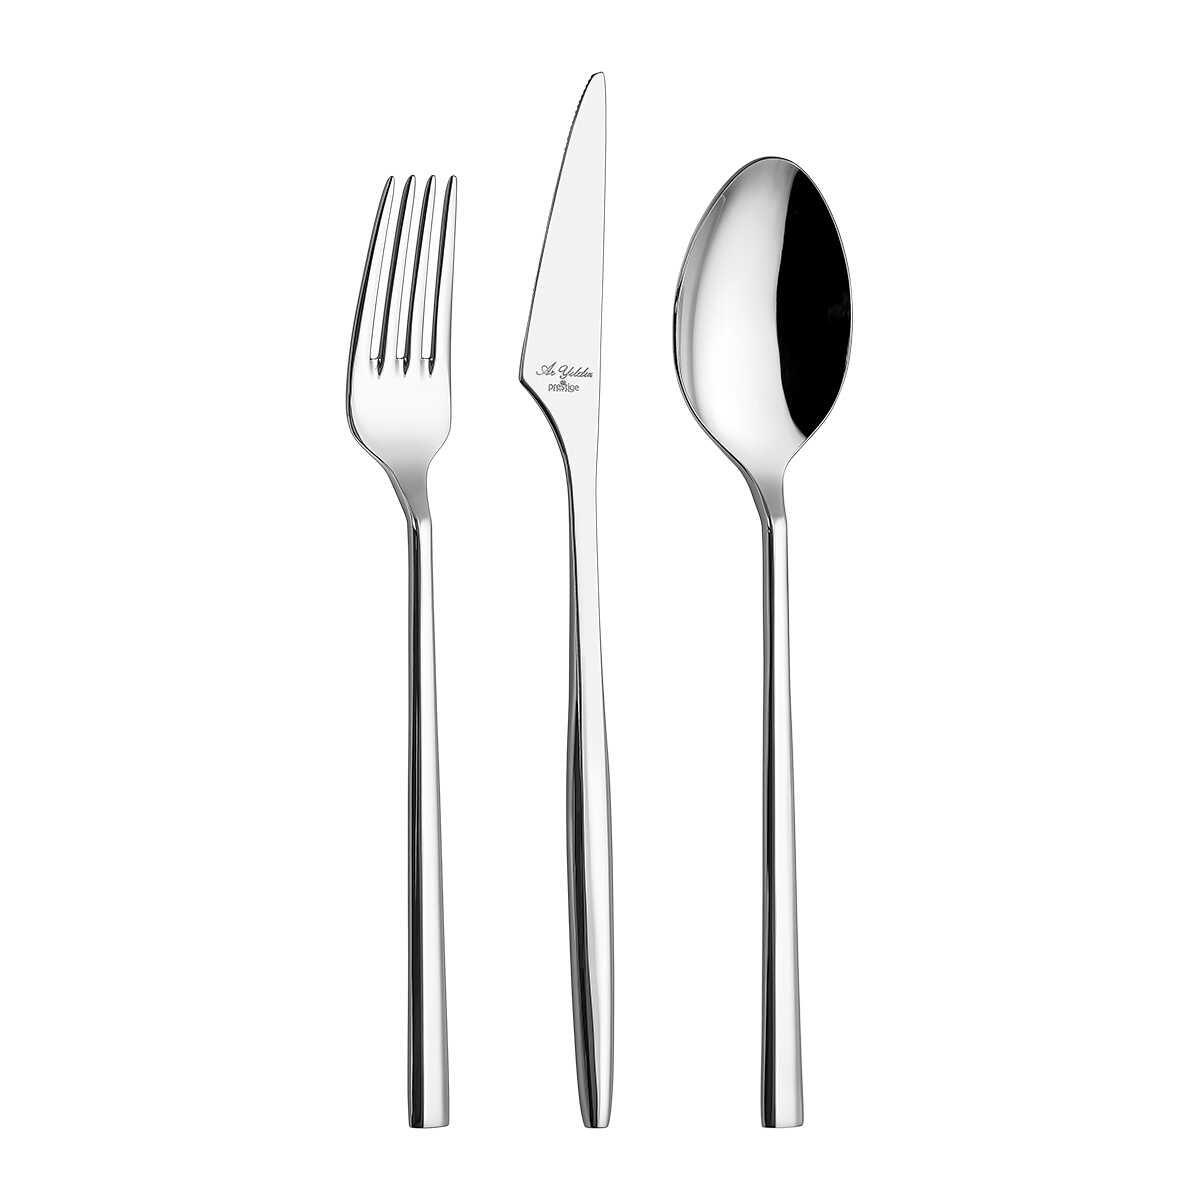 Aryıldız Trendy Prestige Boxed Fork Spoon Knife Set 89 Pieces